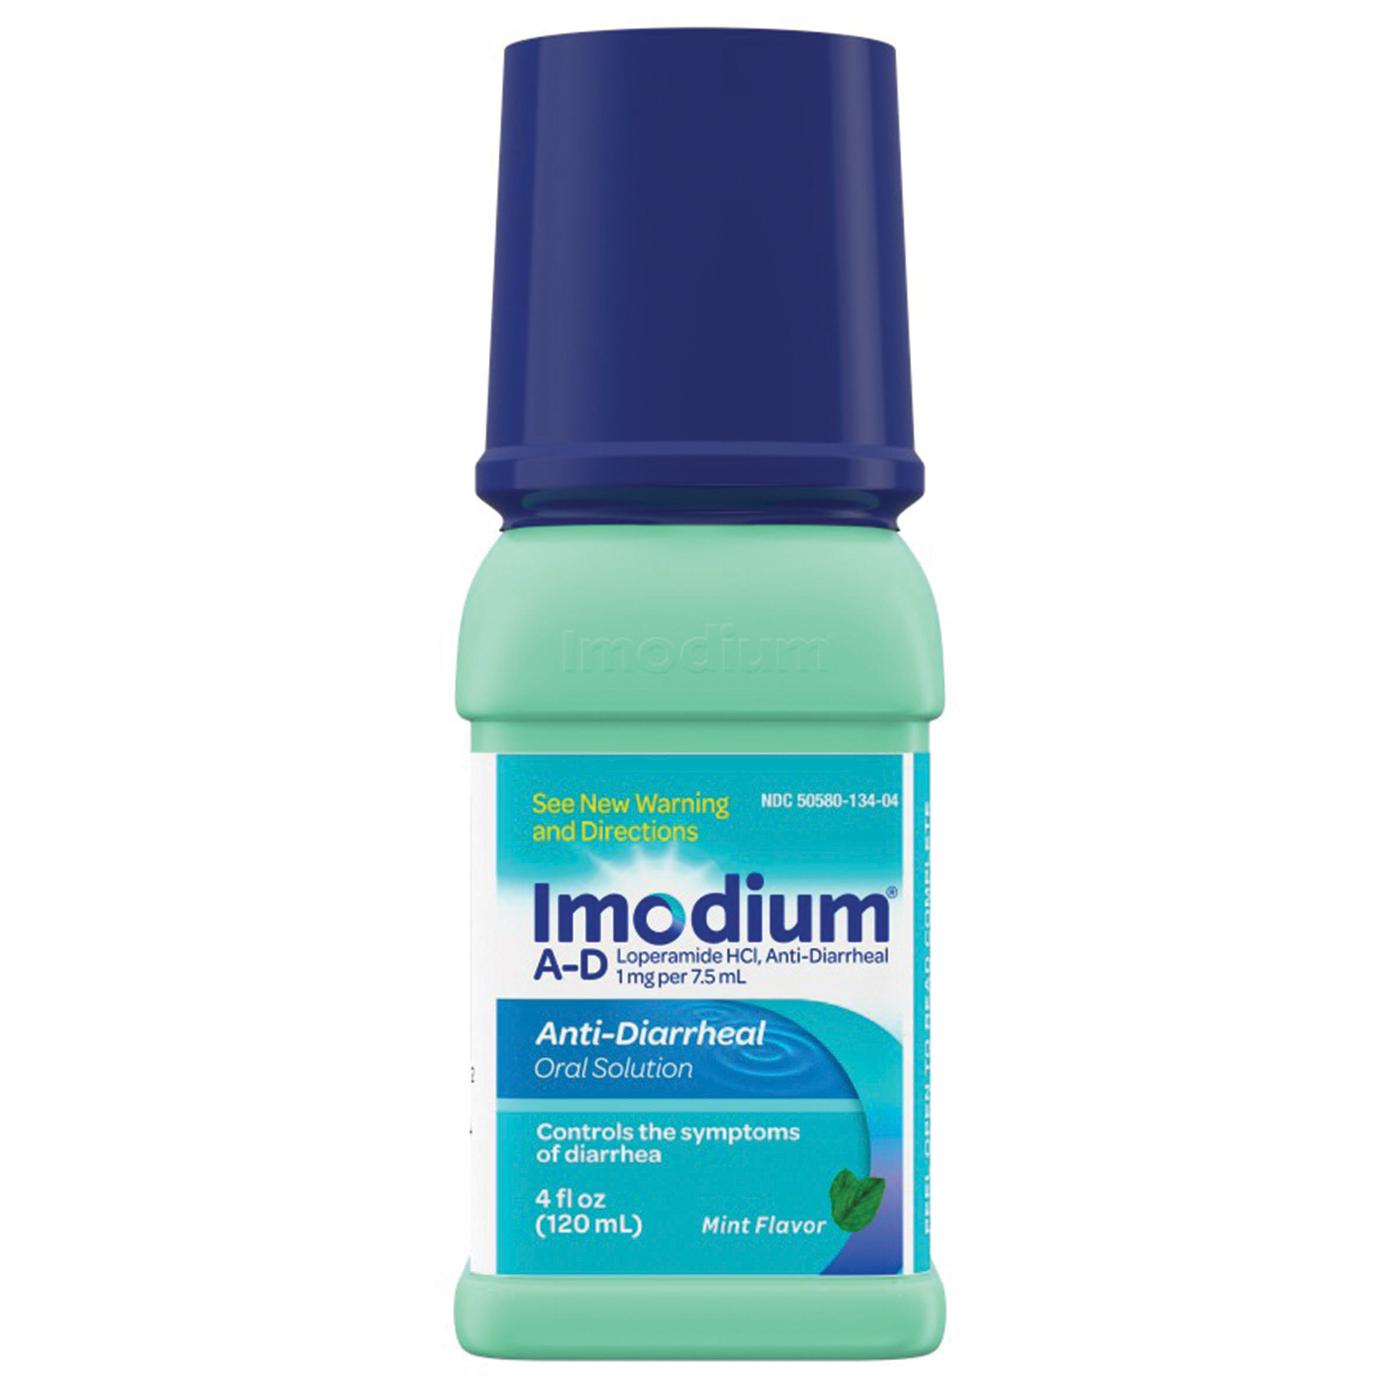 Imodium A-D Liquid; image 1 of 7